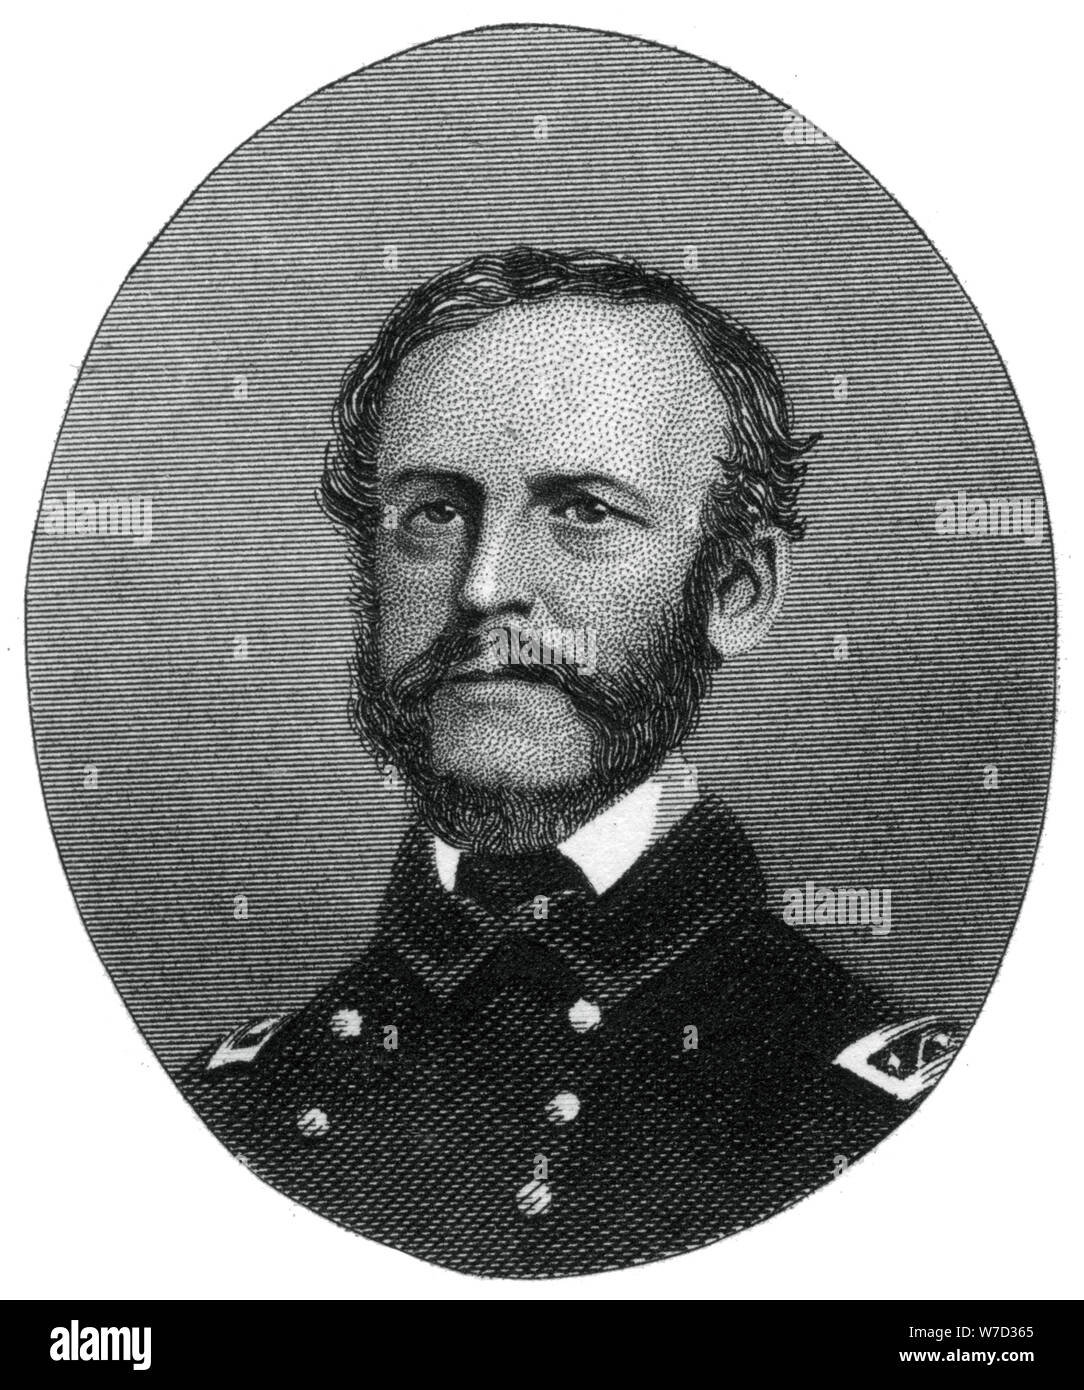 Rear Admiral John Dahlgren, United States Navy, 1862-1867.Artist: J Rogers Stock Photo